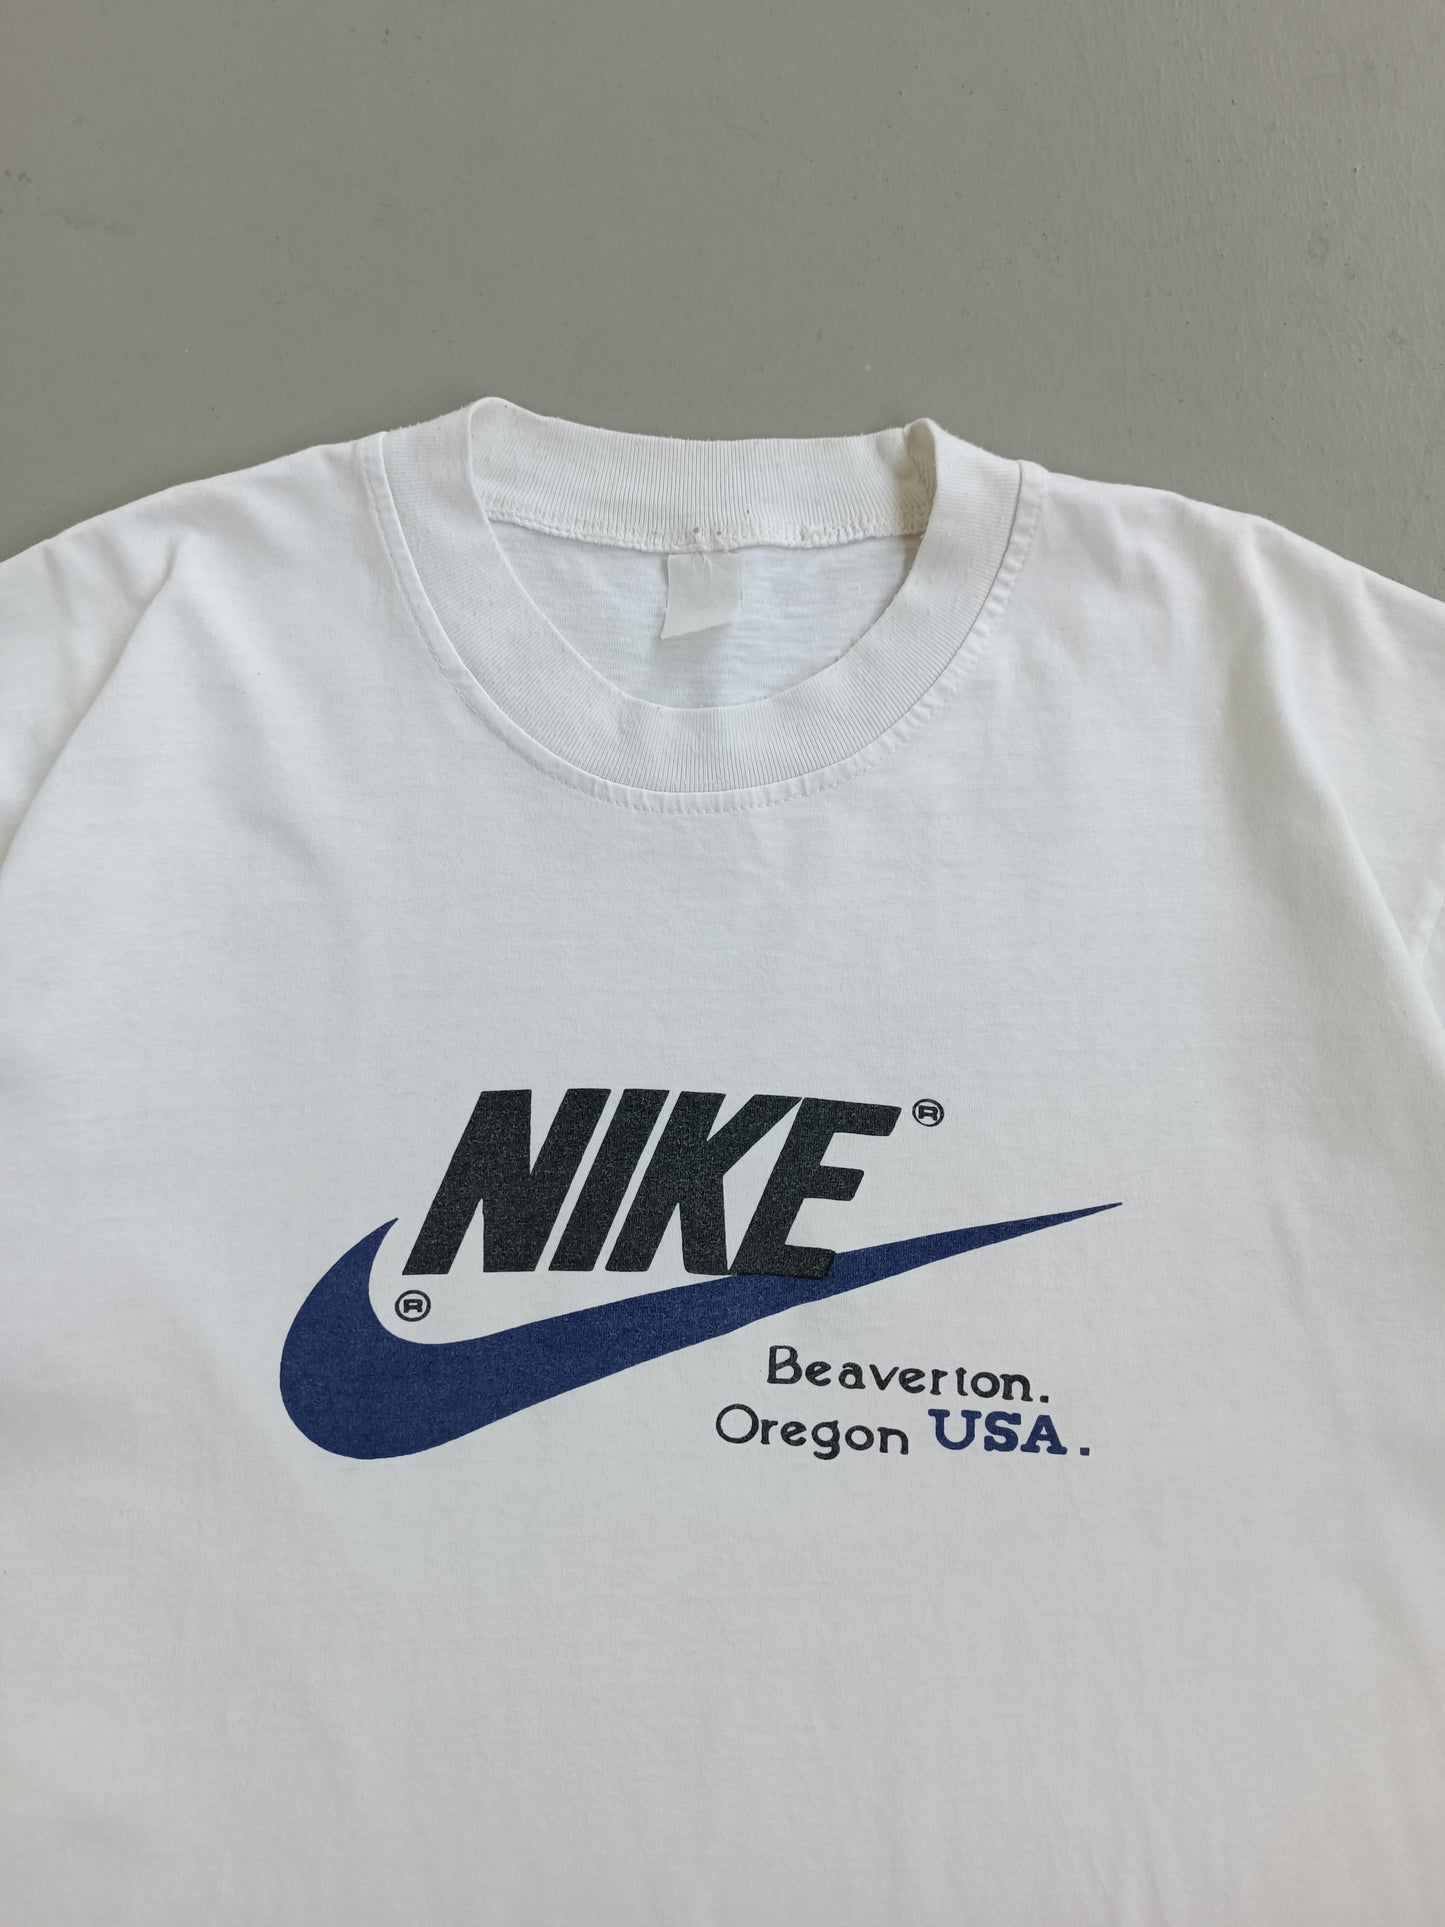 Nike Beaverton Oregon USA - L